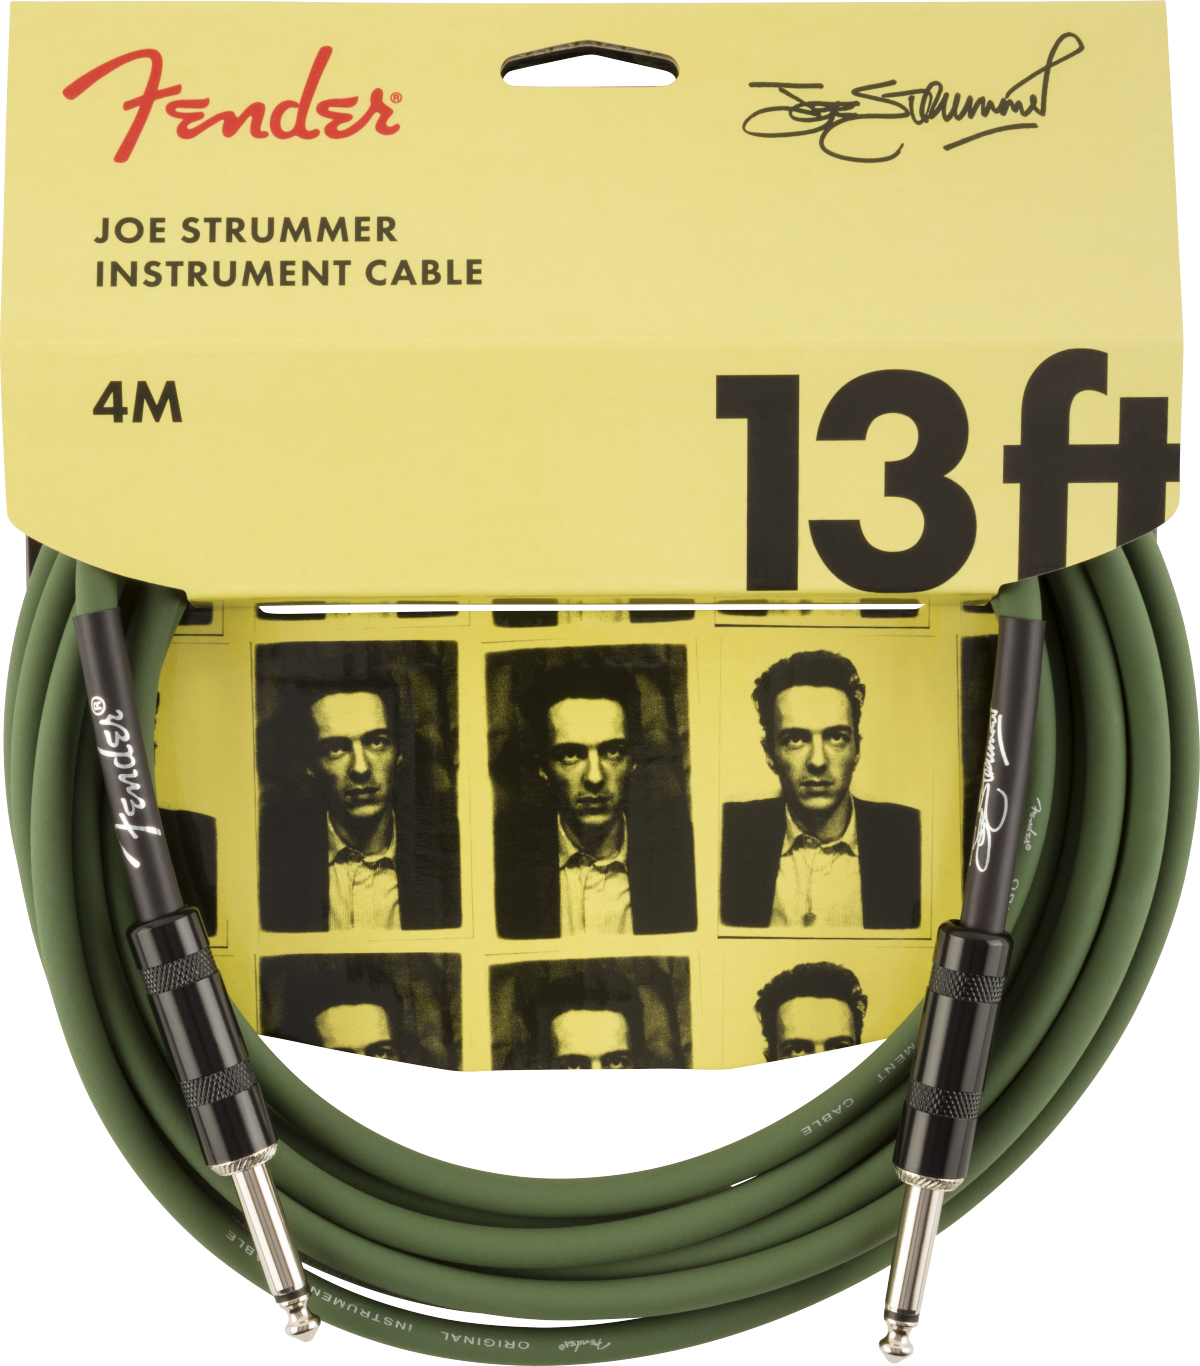 Fender Joe Strummer Pro Instrument Cable Signature Droit Droit 13ft 3.9m Drab Green - Cable - Main picture